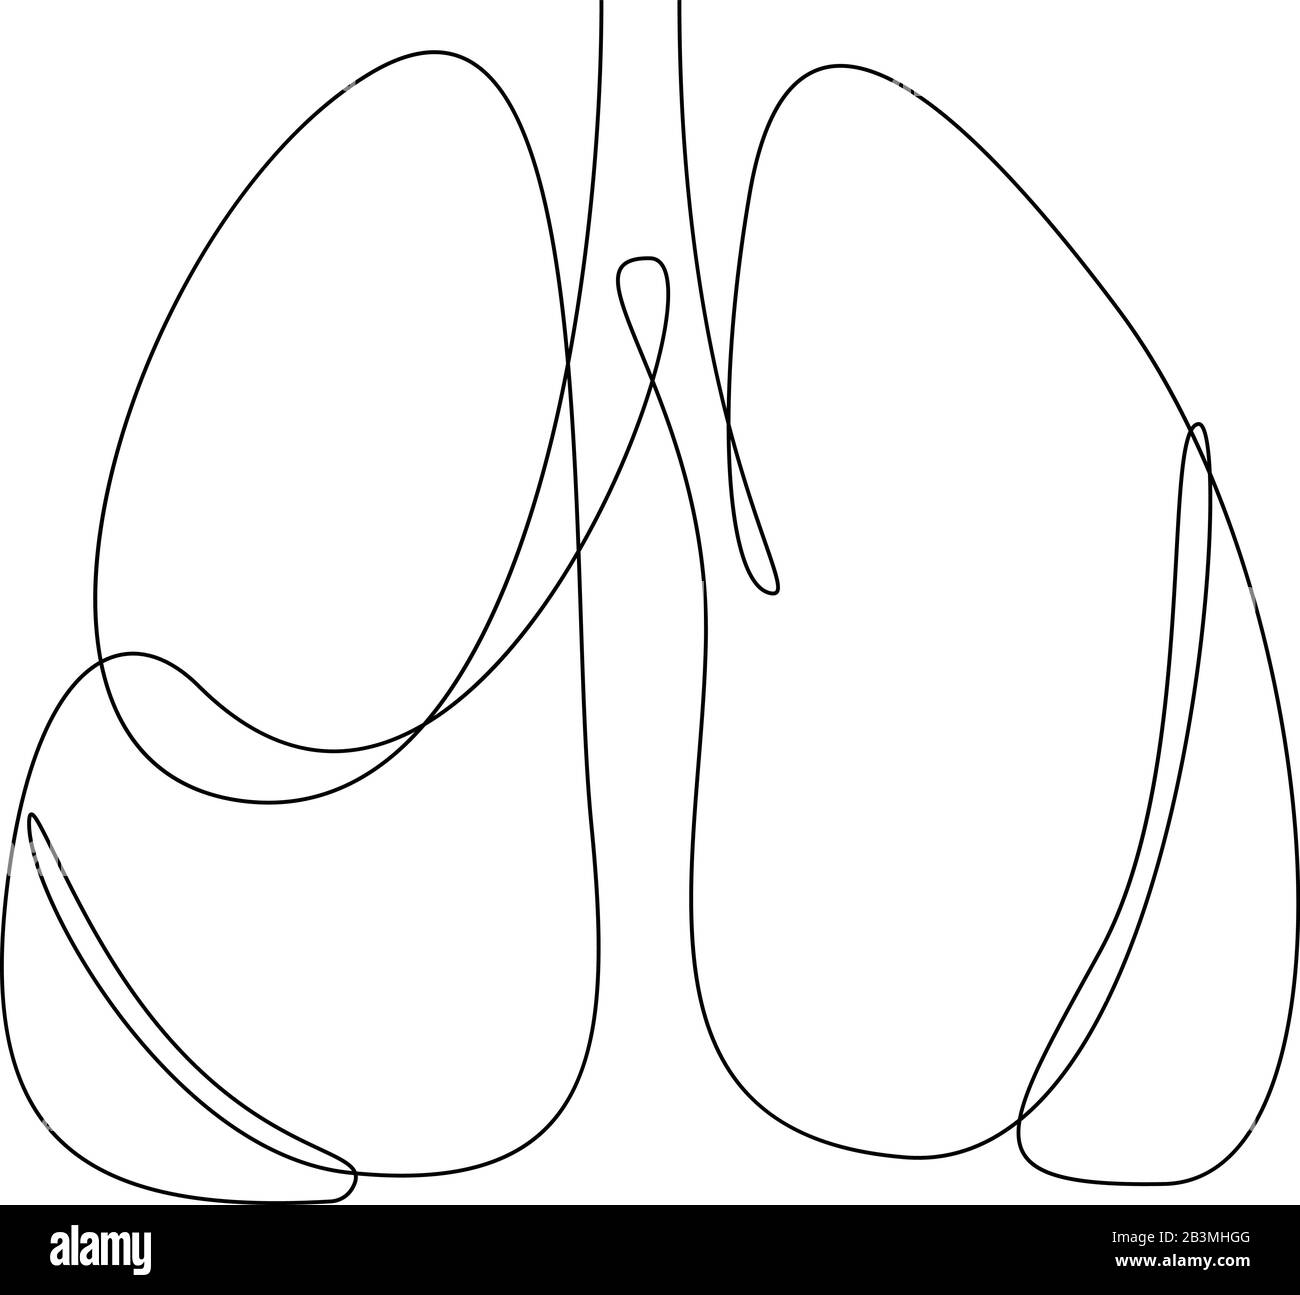 Eine durchgehende Linie kunst anatomischen menschlichen Lunge Silhouette. Gesunde Medizin gegen das Rauchen Konzept Design Weltnichtrauchertag Tuberkulose eine Sk Stock Vektor